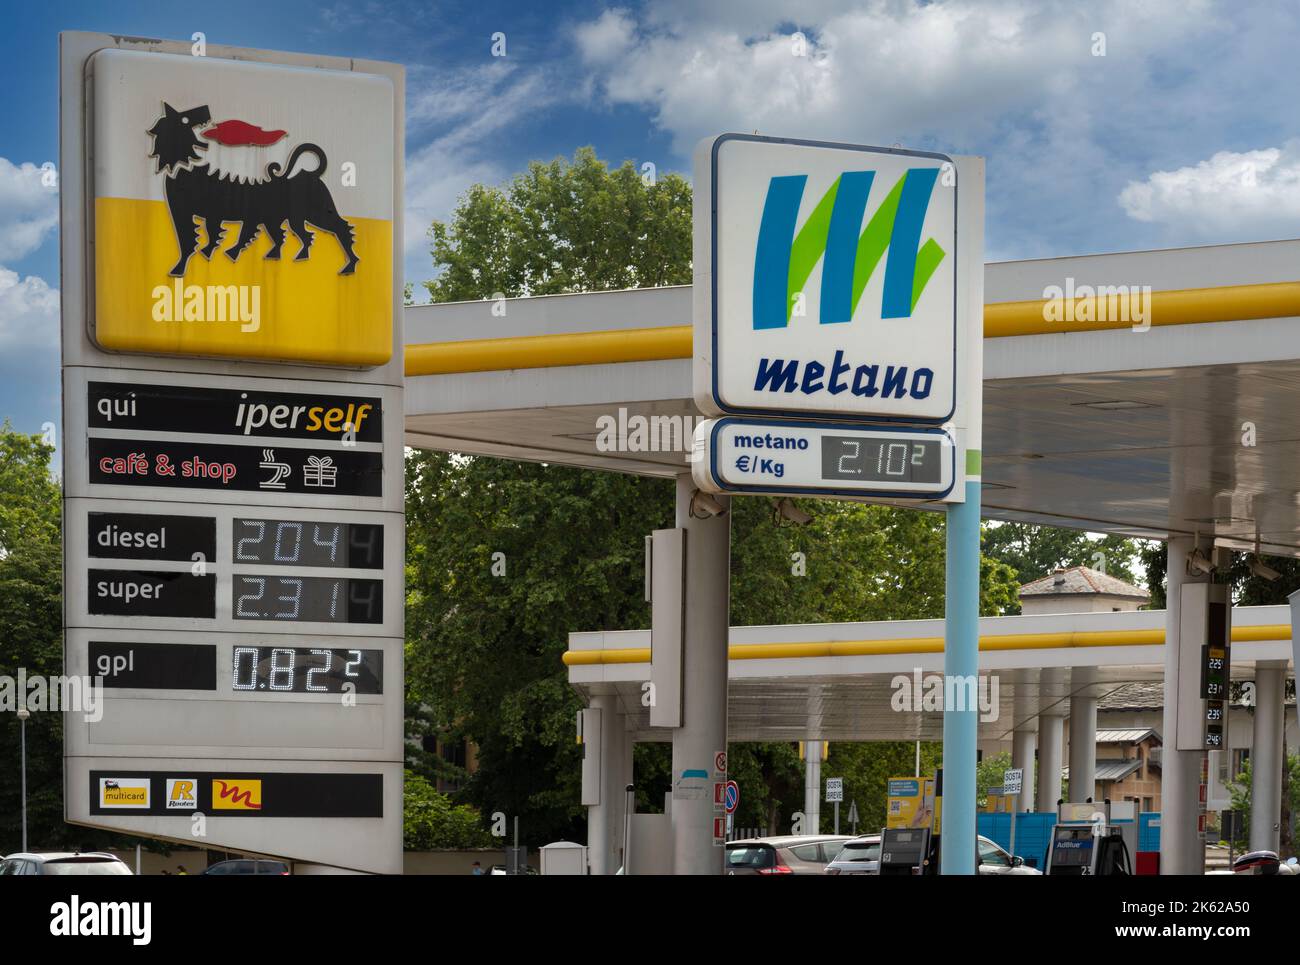 Station d'essence marque agip Banque de photographies et d'images à haute  résolution - Alamy